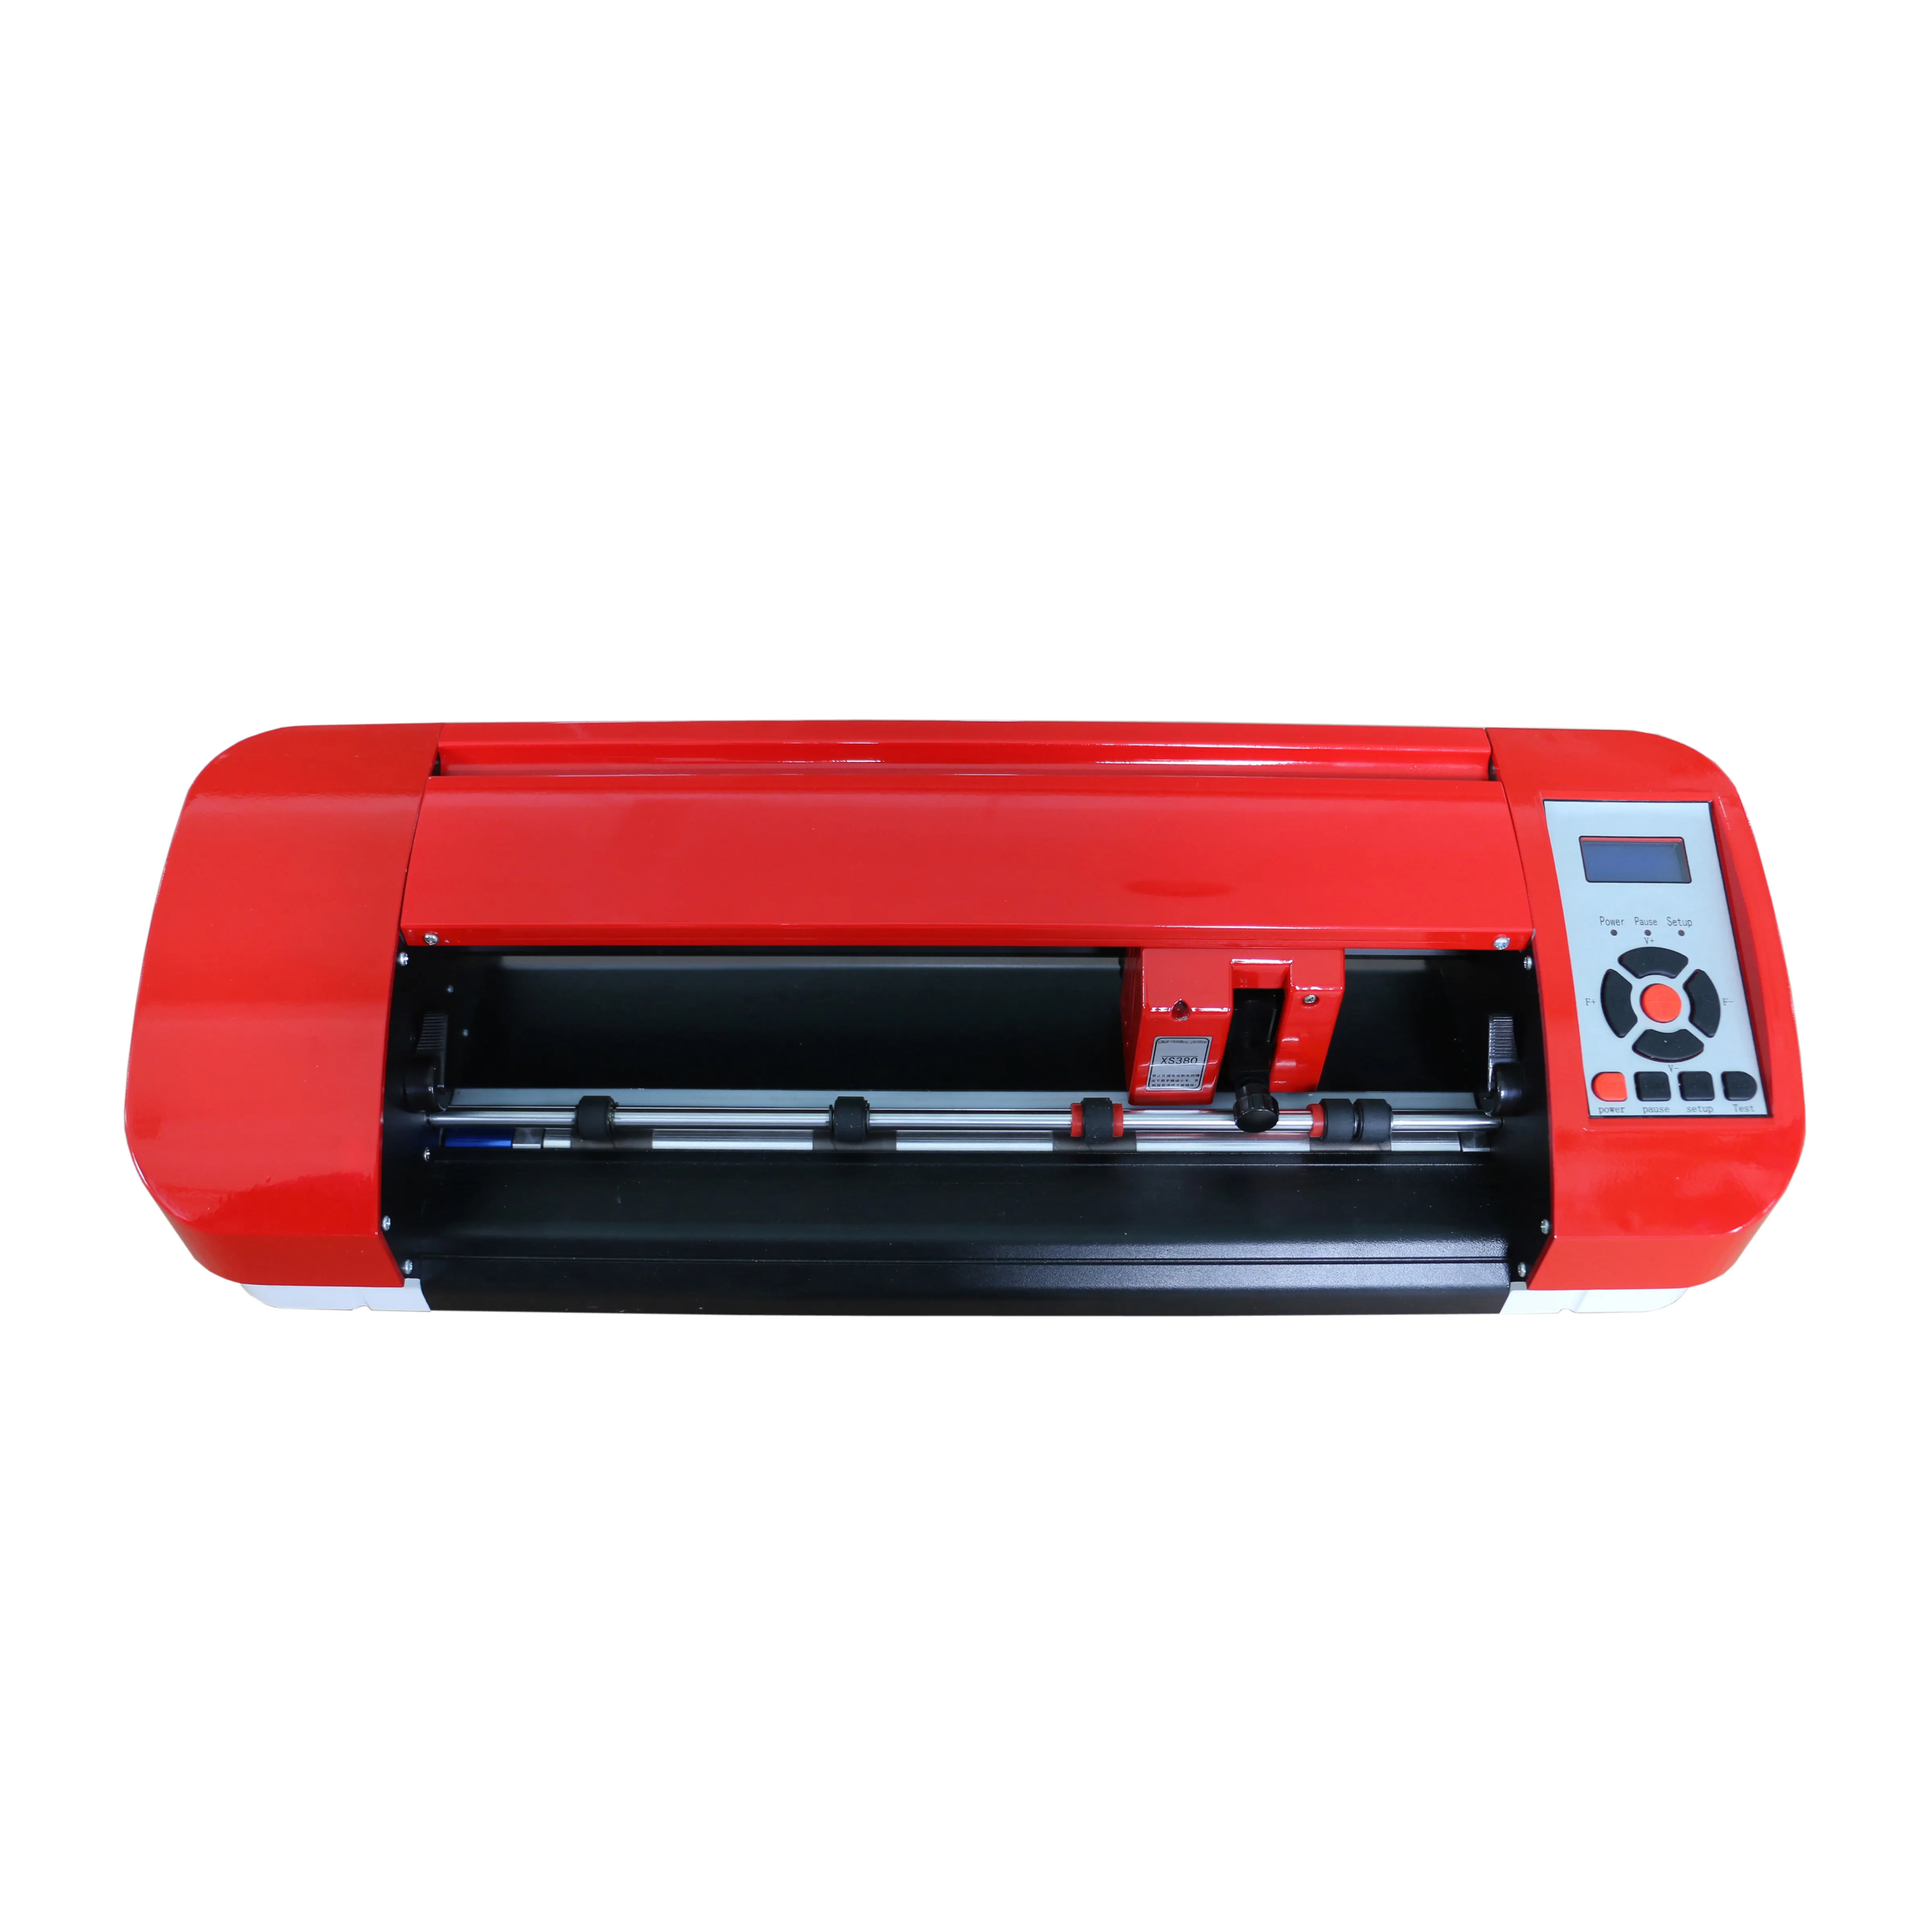 Machine de découpe d'autocollants pour imprimante vinyle, pour traceur a4 et a3, économique,